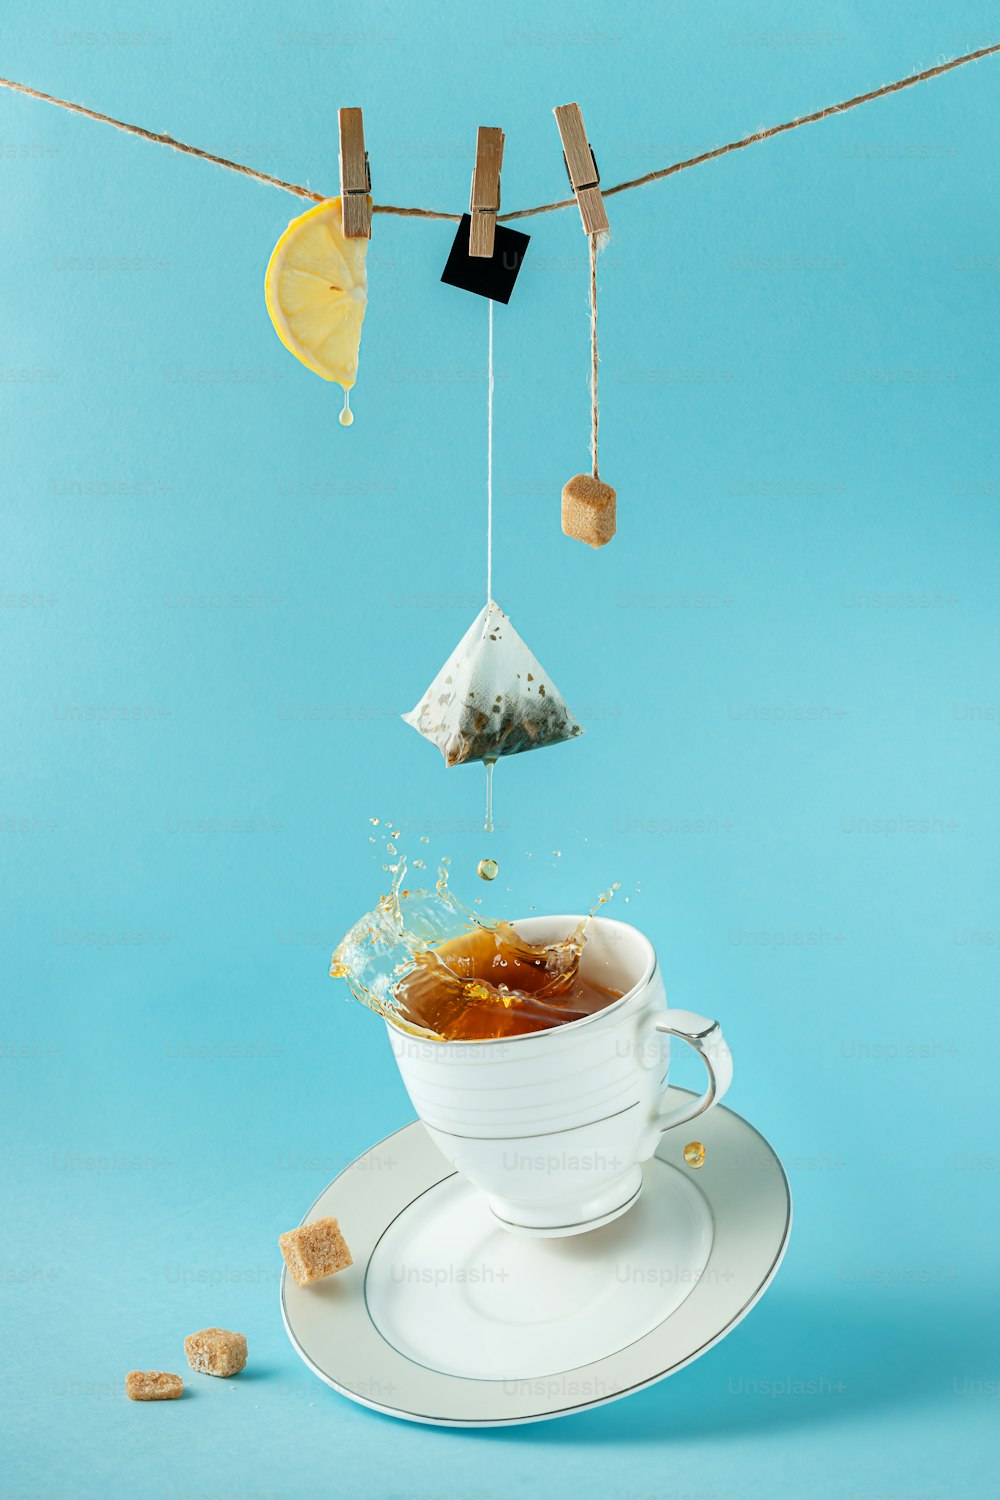 Sachet de thé, citron et sucre suspendus à la corde au-dessus d’éclaboussures de thé dans la tasse sur fond bleu. Nature morte créative